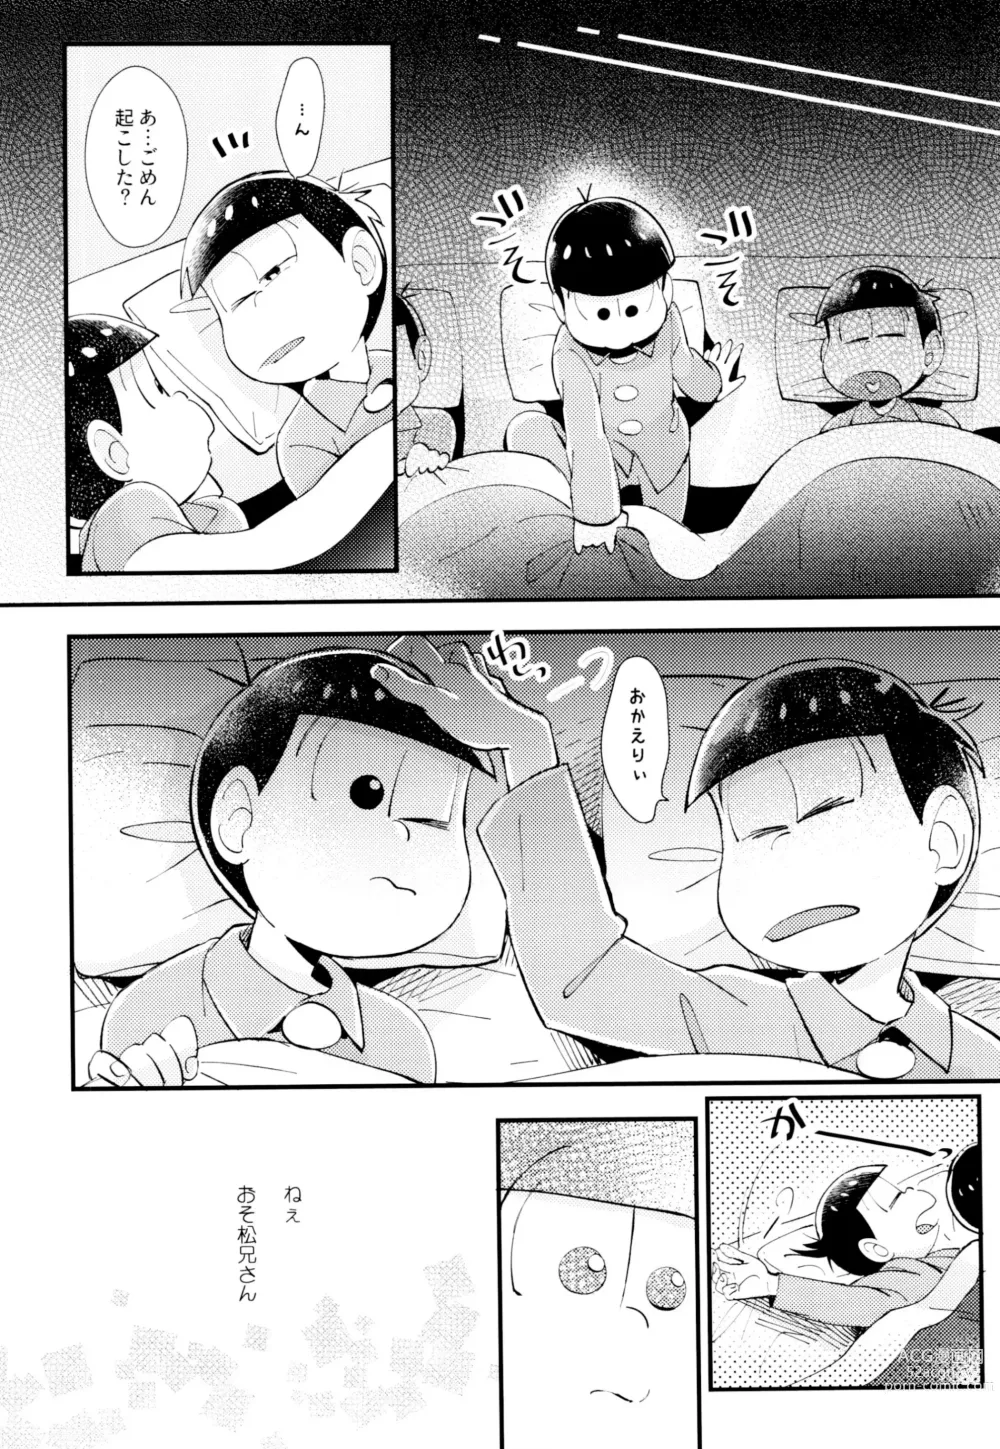 Page 8 of doujinshi Hajimari wa, Yomichi no Kaori.